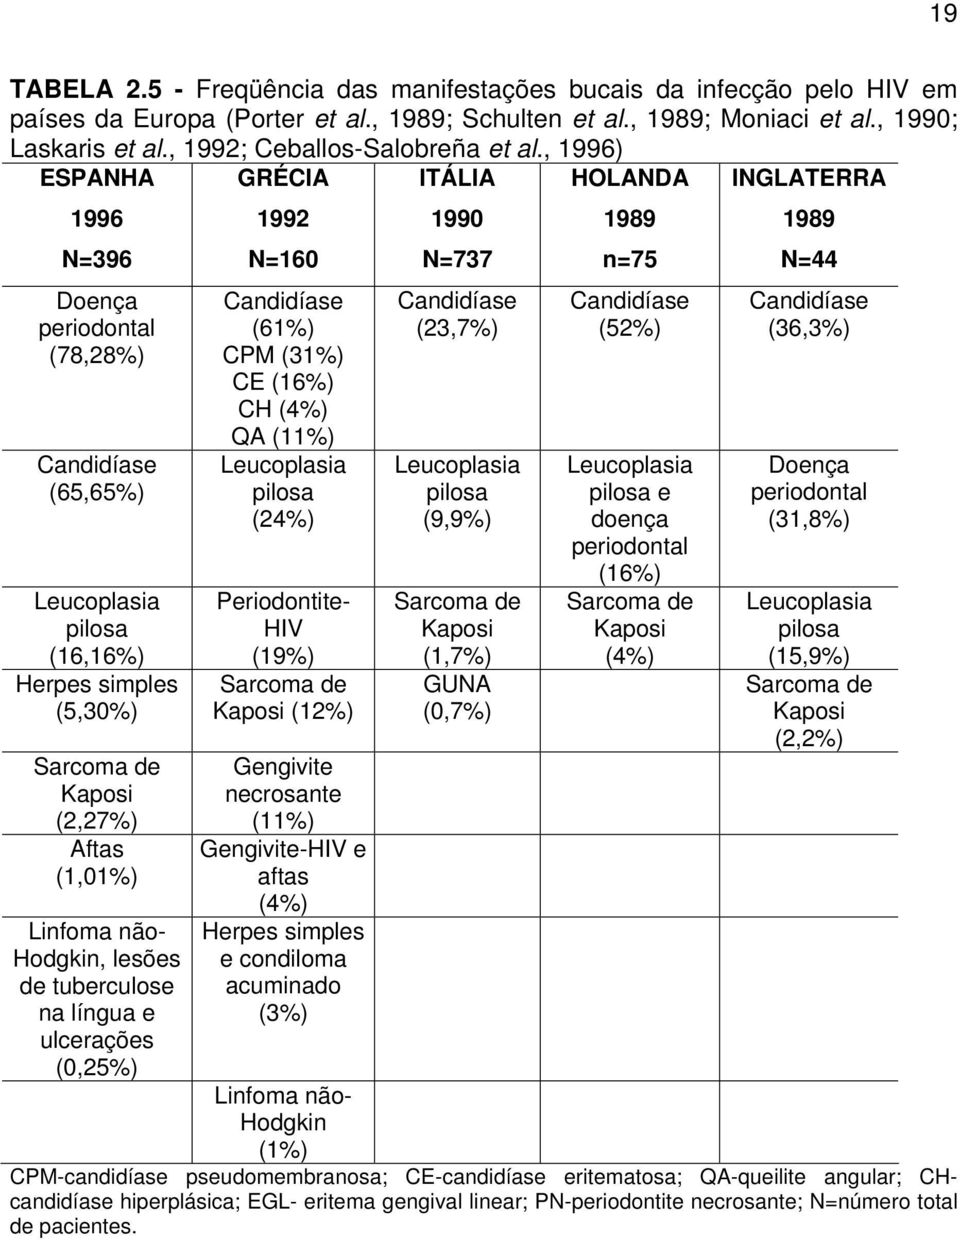 , 1996) ESPANHA GRÉCIA ITÁLIA HOLANDA INGLATERRA 1996 N=396 Doença periodontal (78,28%) Candidíase (65,65%) pilosa (16,16%) Herpes simples (5,30%) Sarcoma de Kaposi (2,27%) Aftas (1,01%) Linfoma não-